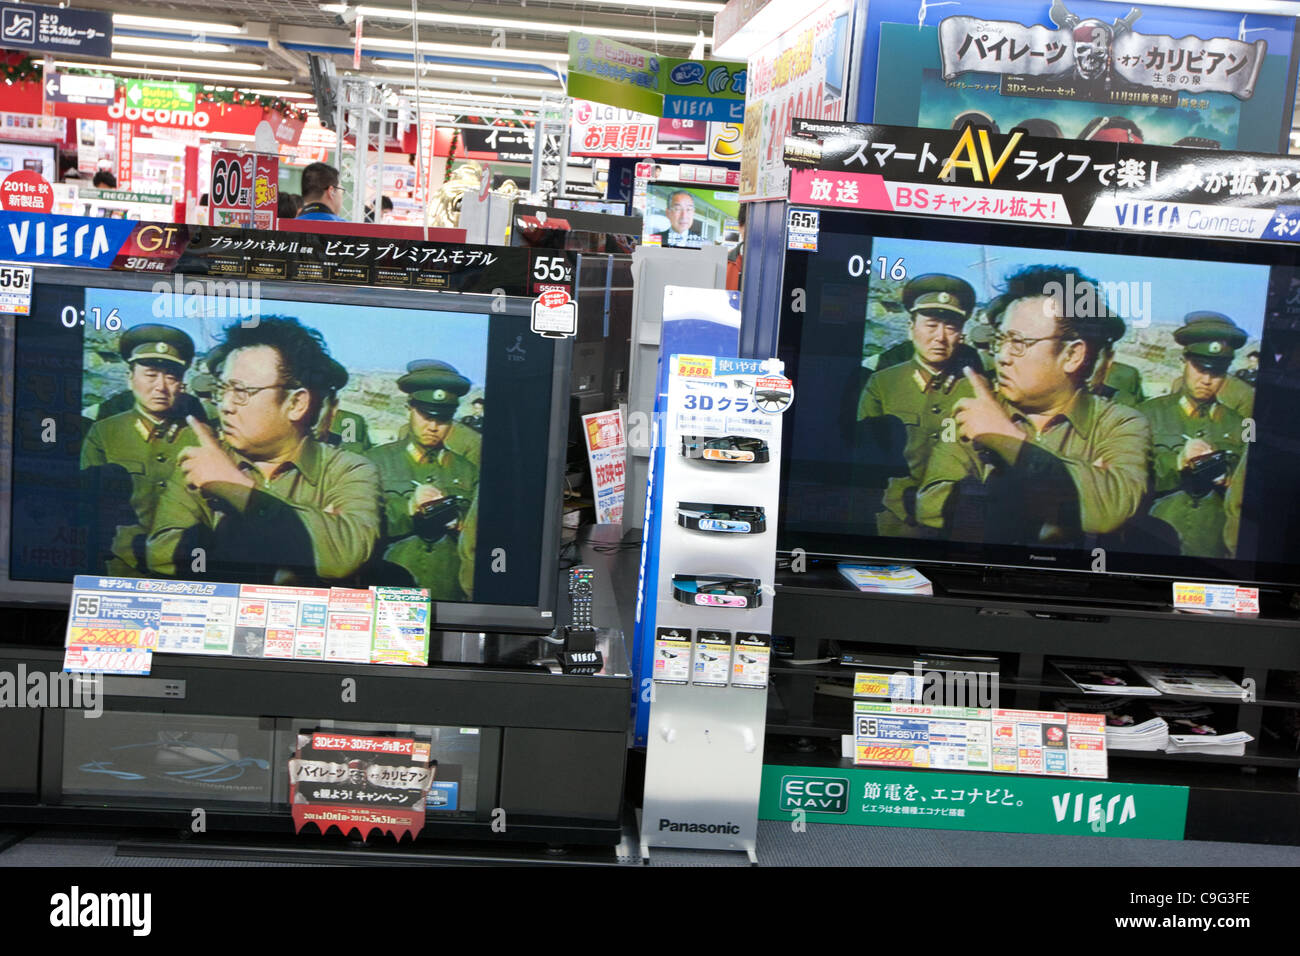 Immagini di Kim Jong-Il appaiono sulla televisione giapponese nella scia della sua morte e della sua transizione del potere di suo figlio Kim Jong-Un, in Tokyo, Giappone, martedì 20 dicembre 2011. Foto Stock